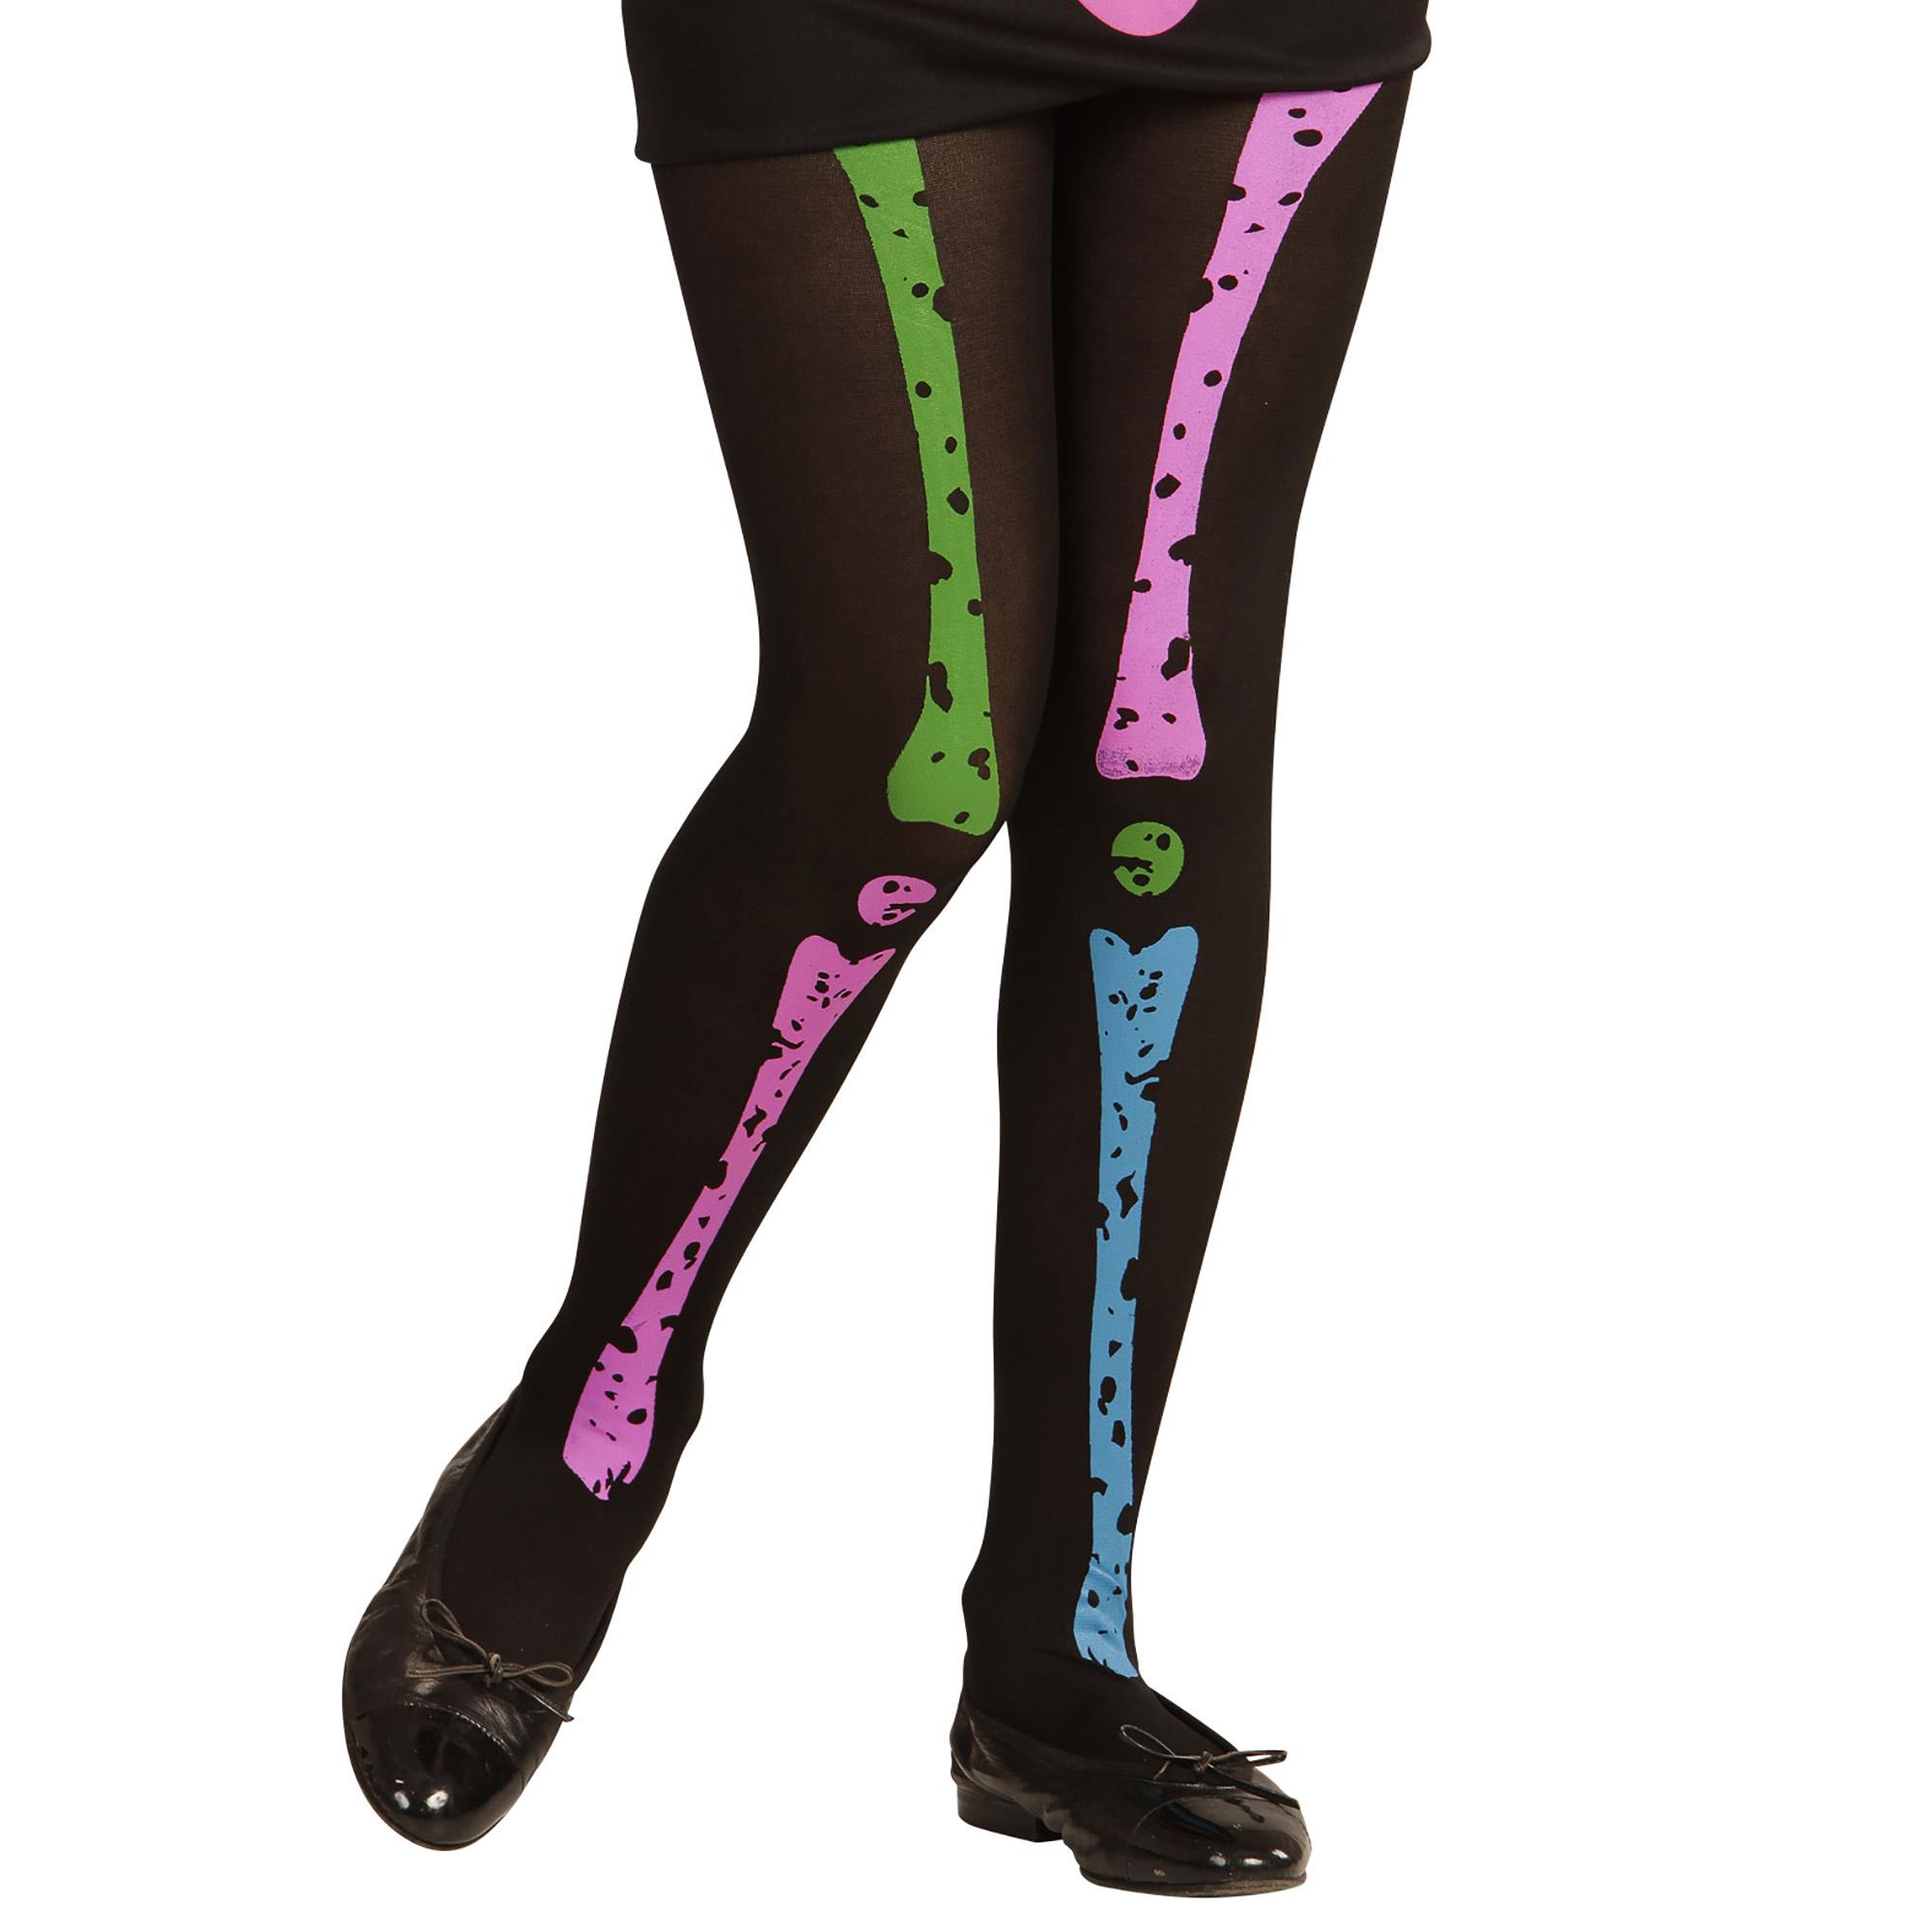 Kinder panty zwart met neon kleuren skelet en botten  kind